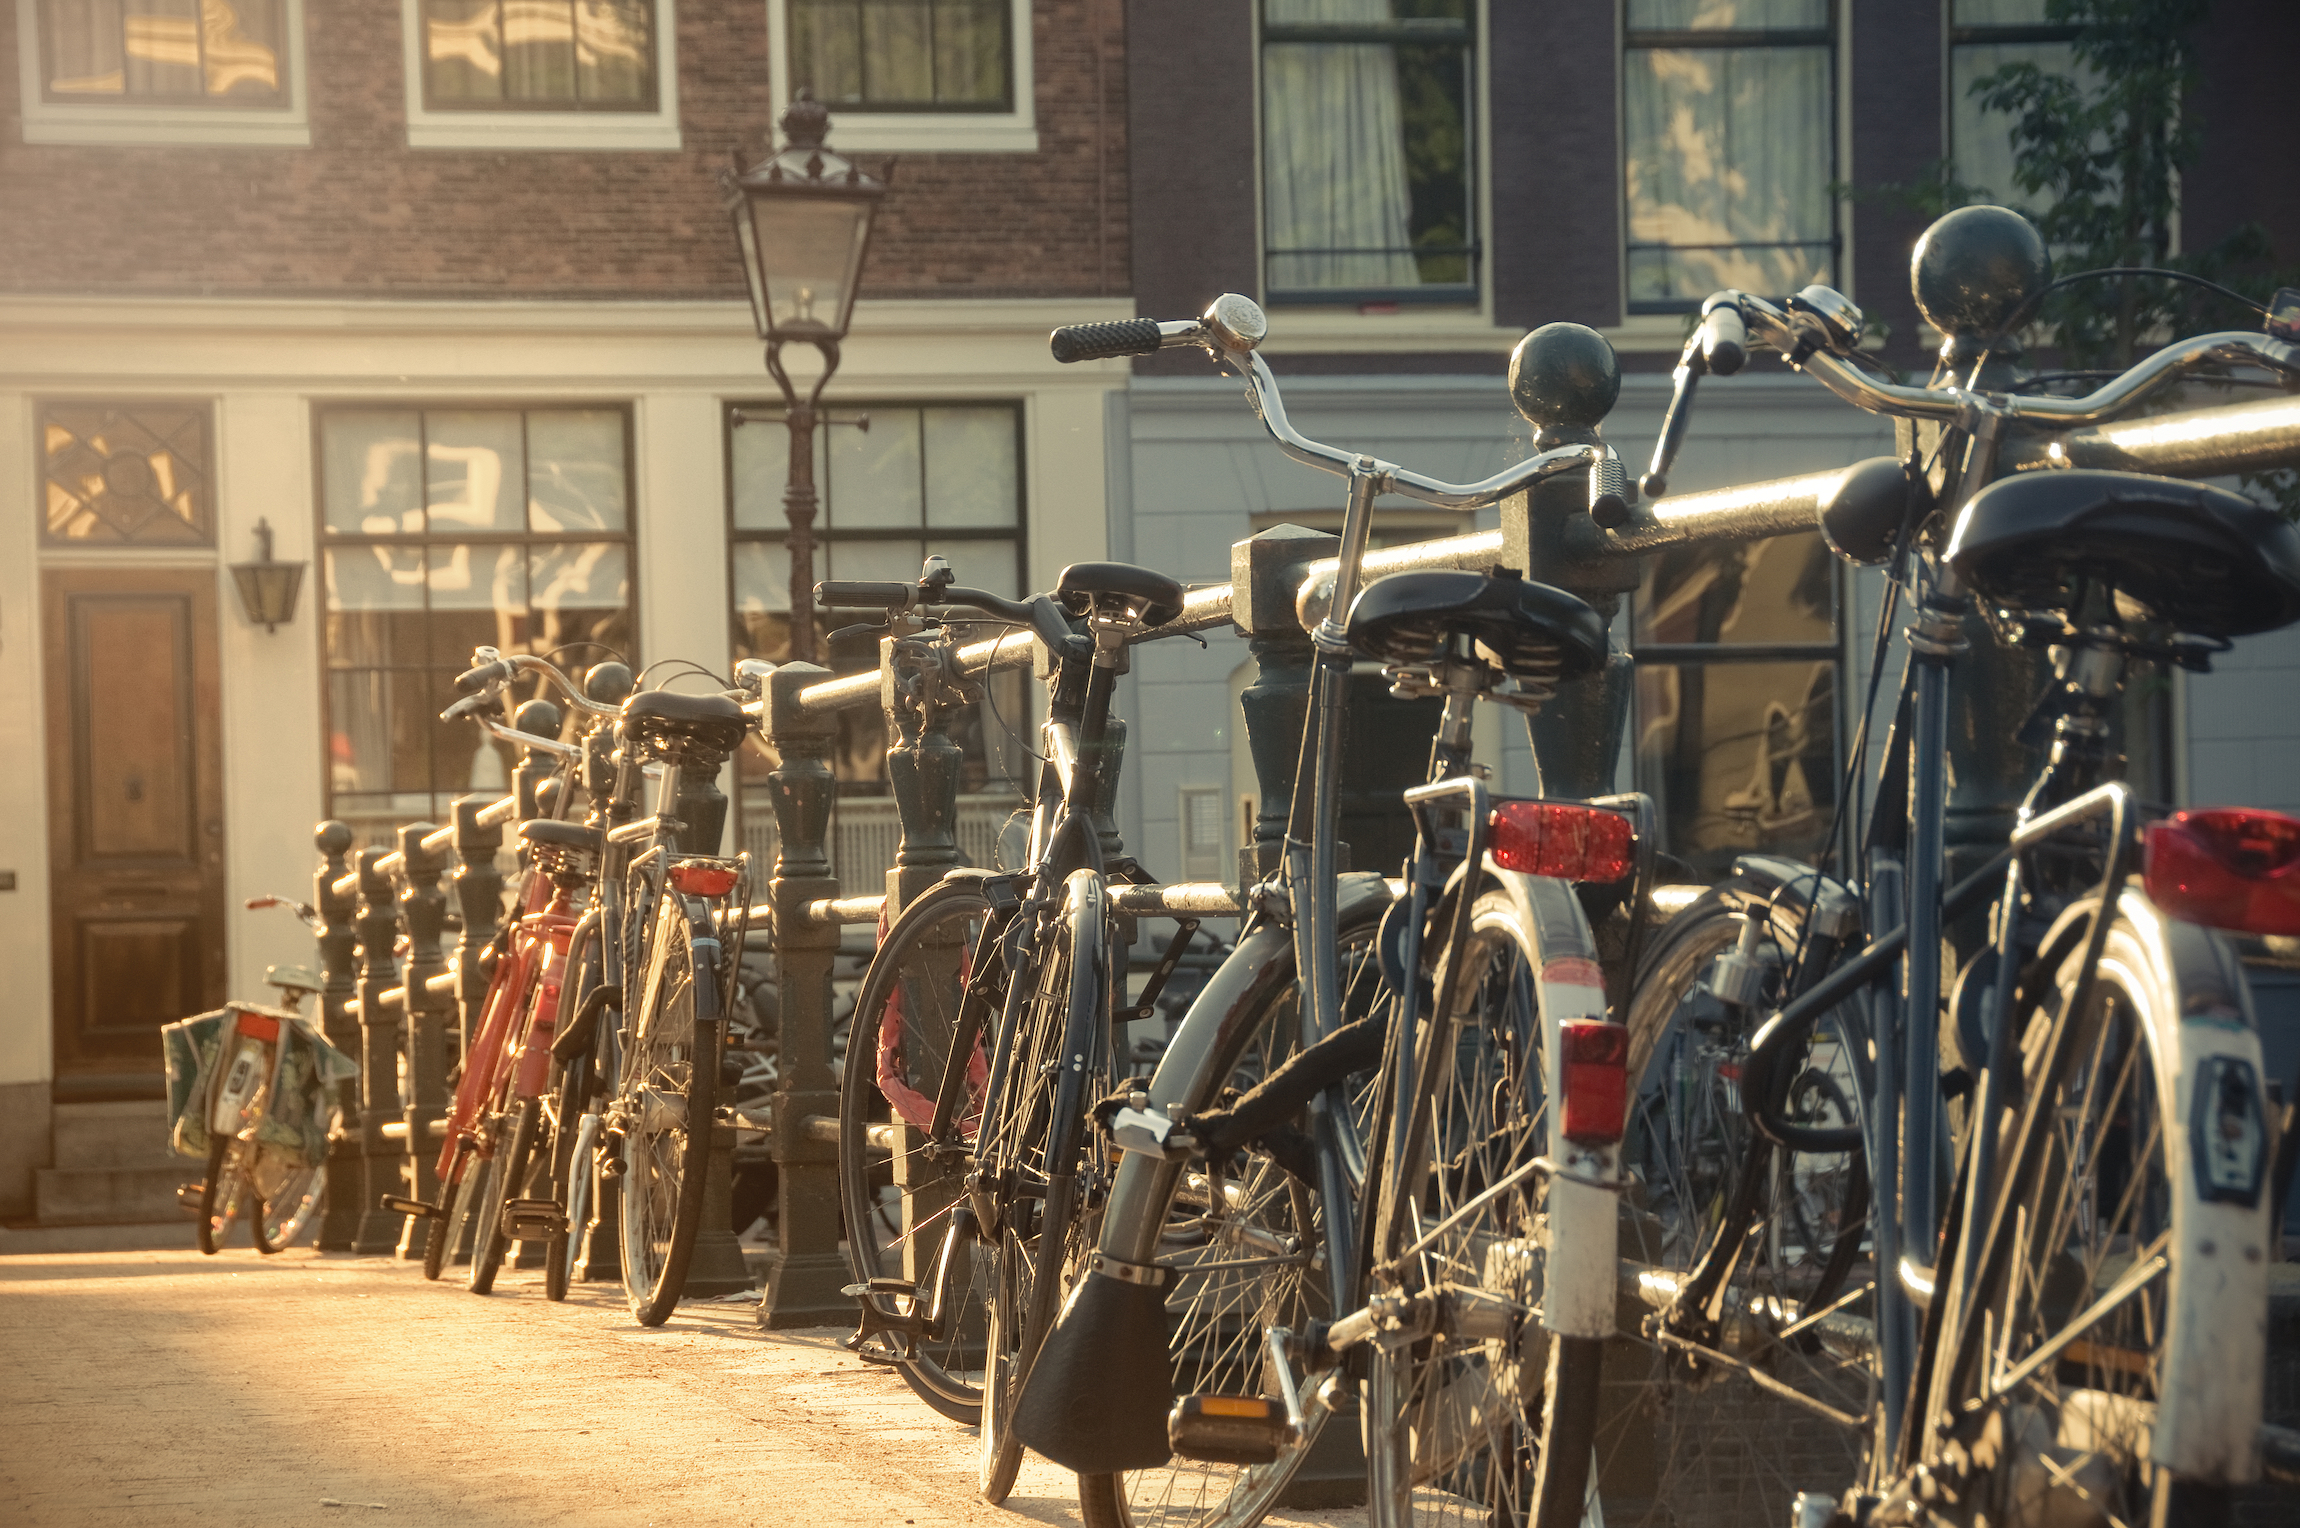 Rząd rowerów przy poręczy mostu w Amsterdamie, Holandia, o zachodzie słońca, Dlaczego warto jechać do Amsterdamu